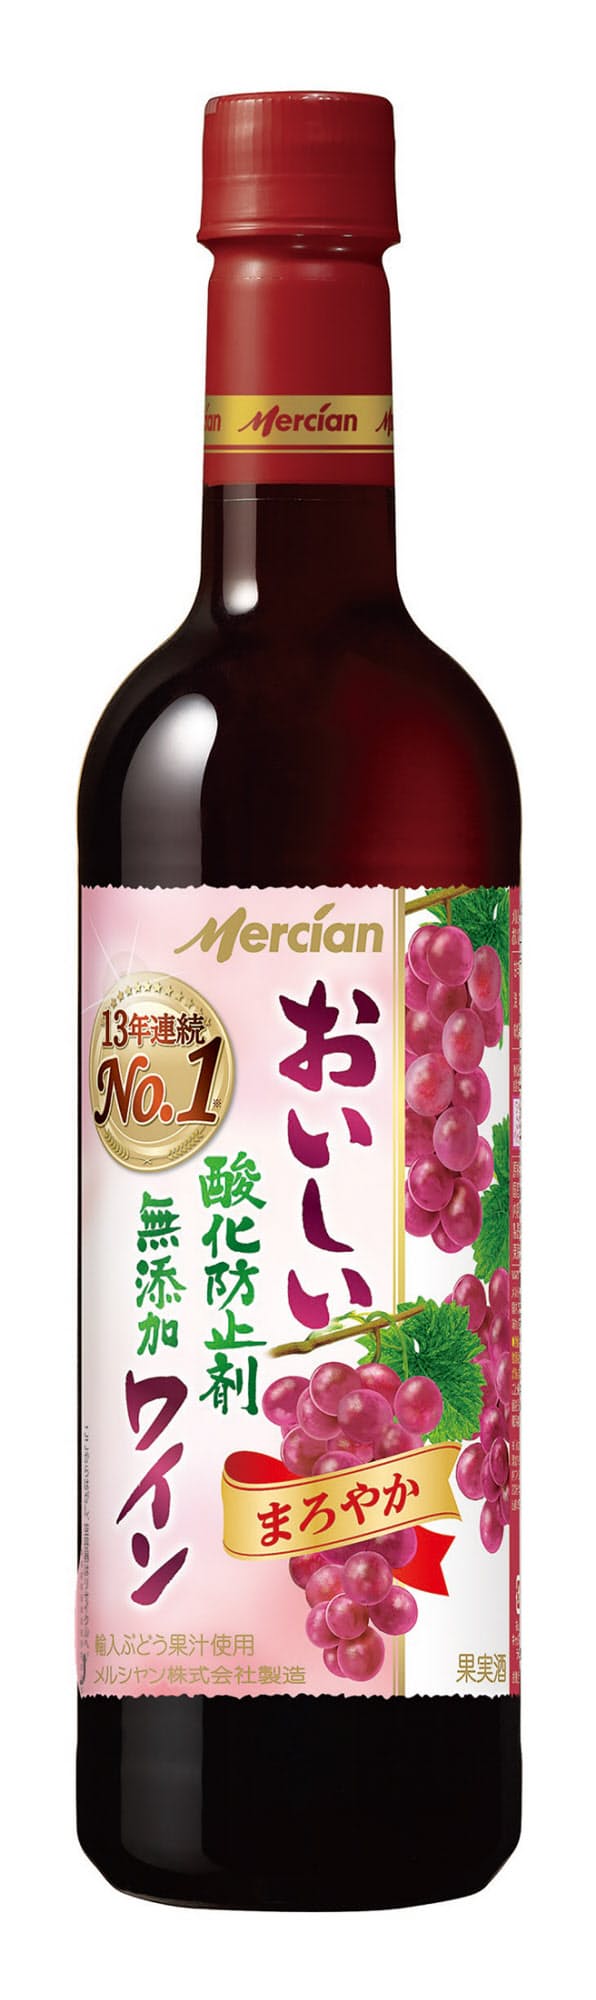 ワインを甘くおいしく 酸化防止剤なしで醸す日本の技 Nikkei Style